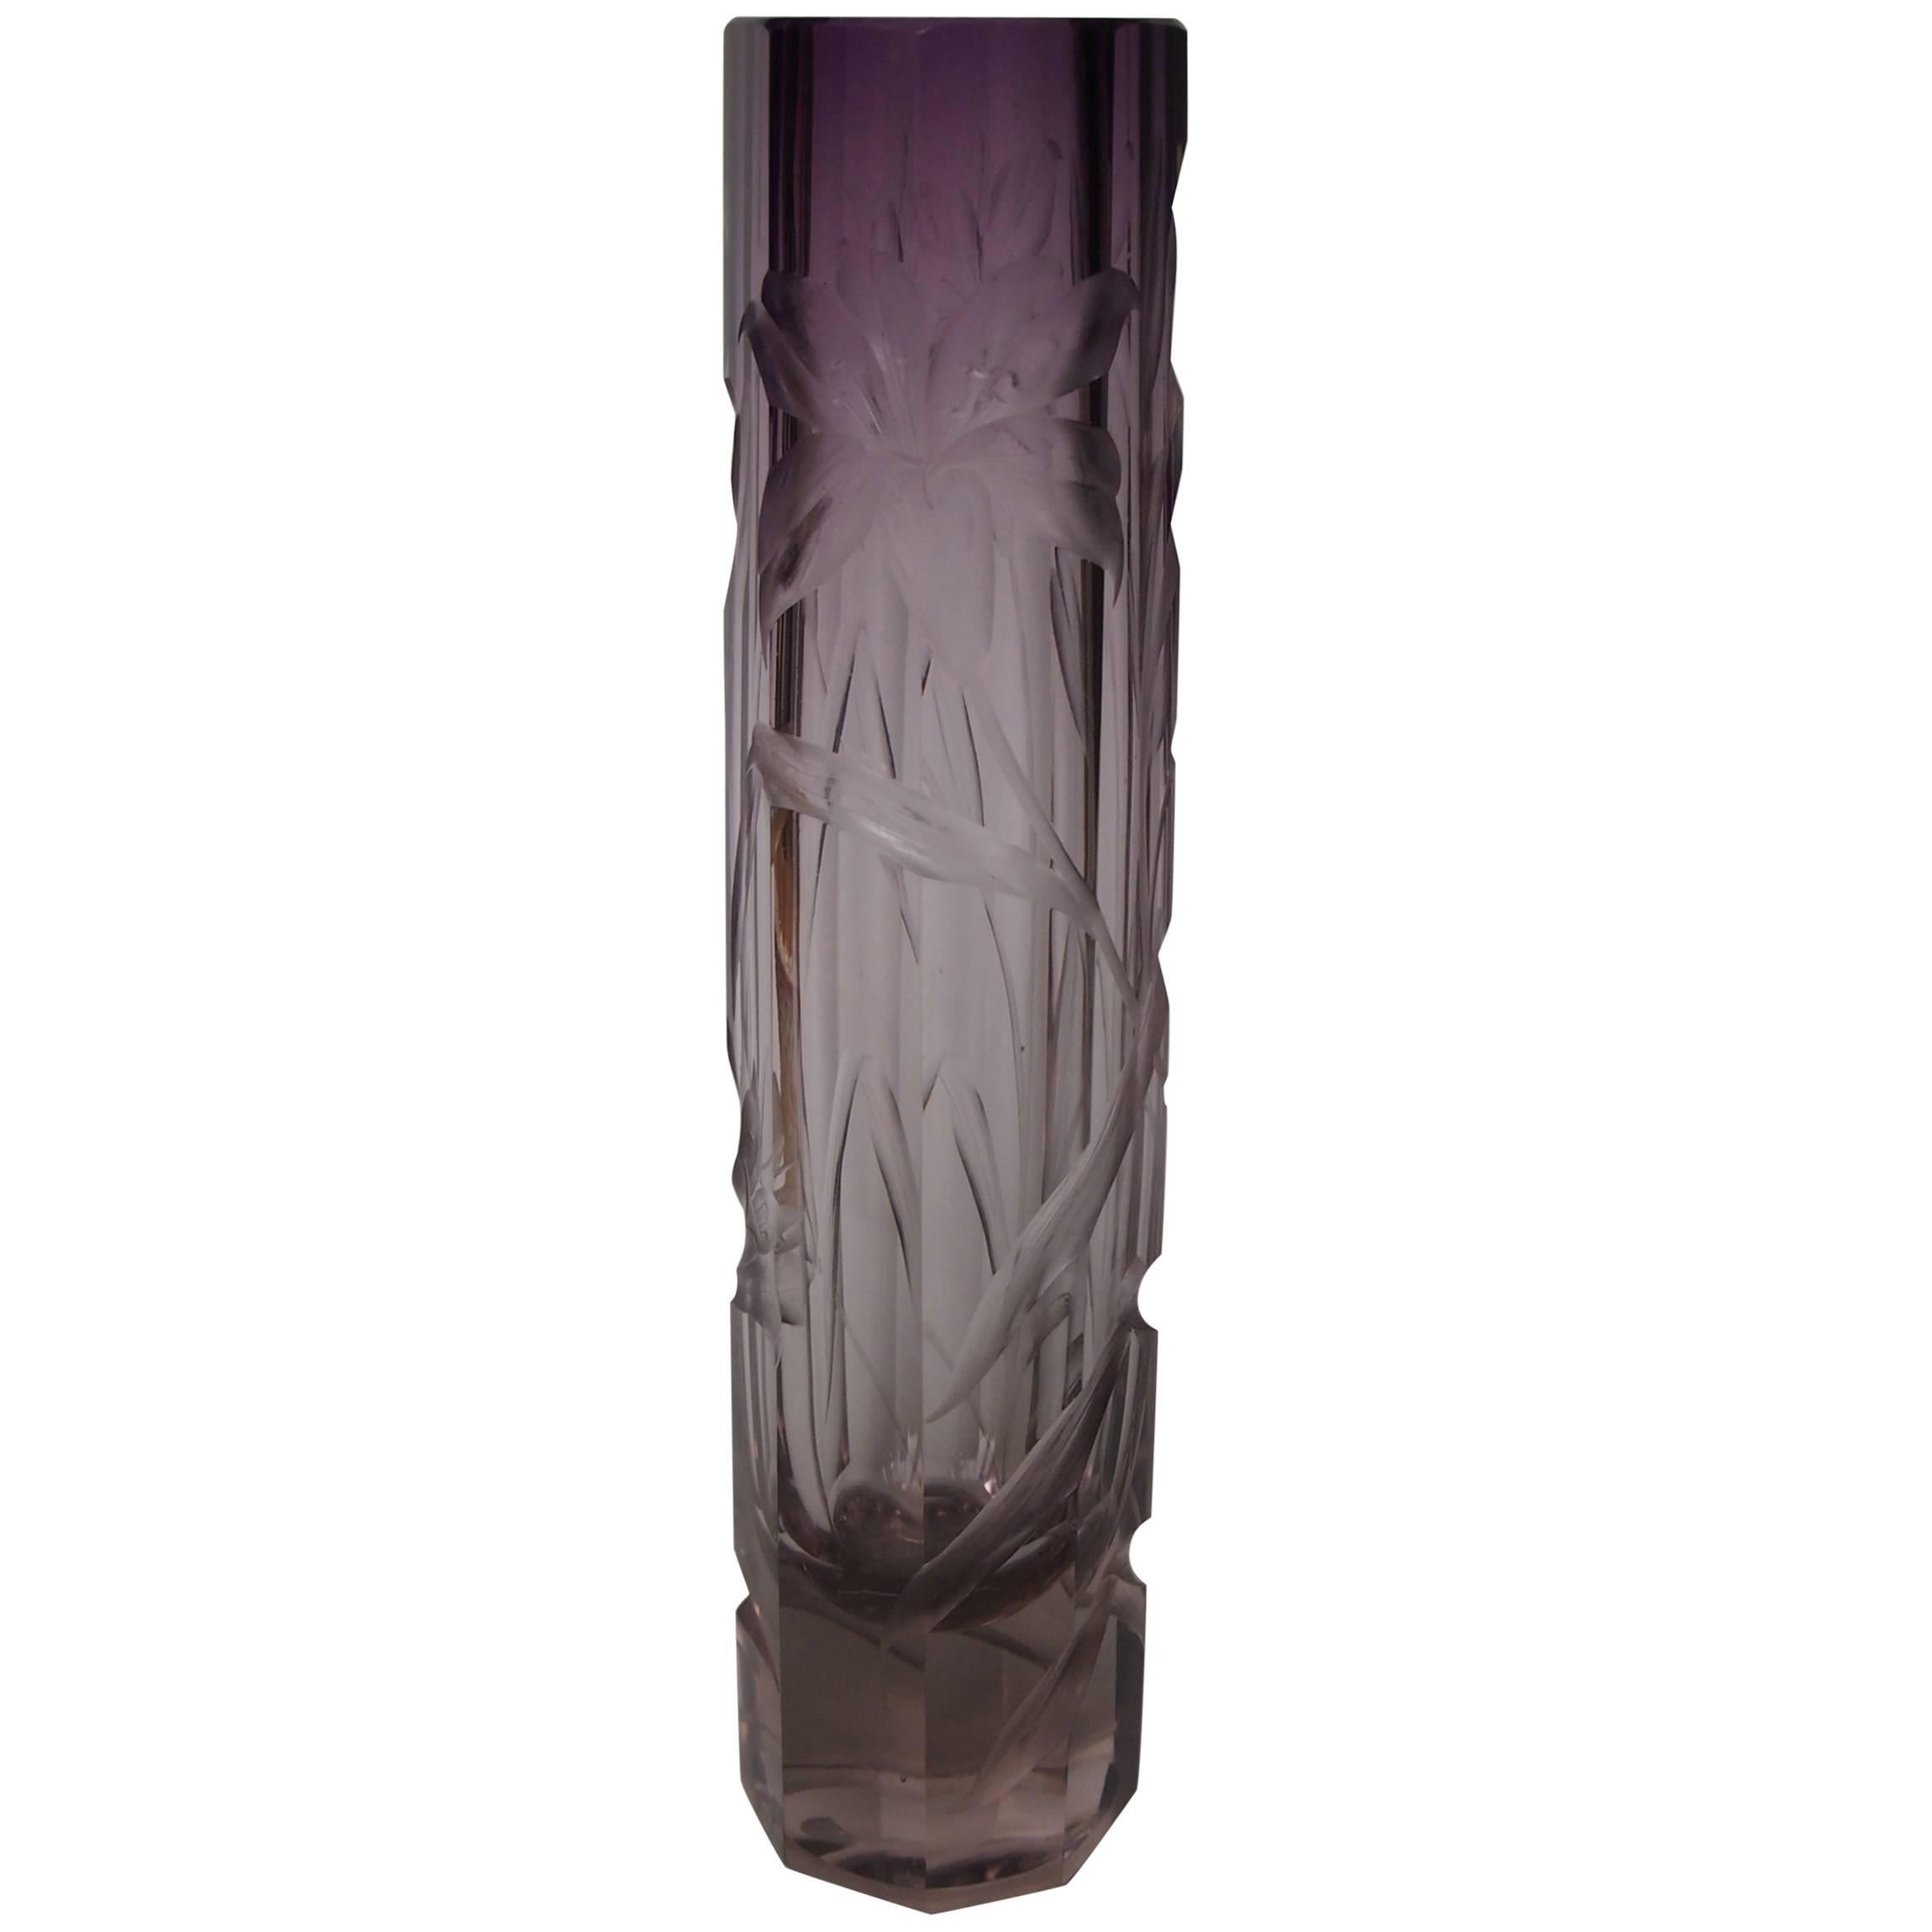 Bohemian Art Nouveau Large Moser Purple to Clear Intaglio Cut Glass Vase c1900 For Sale